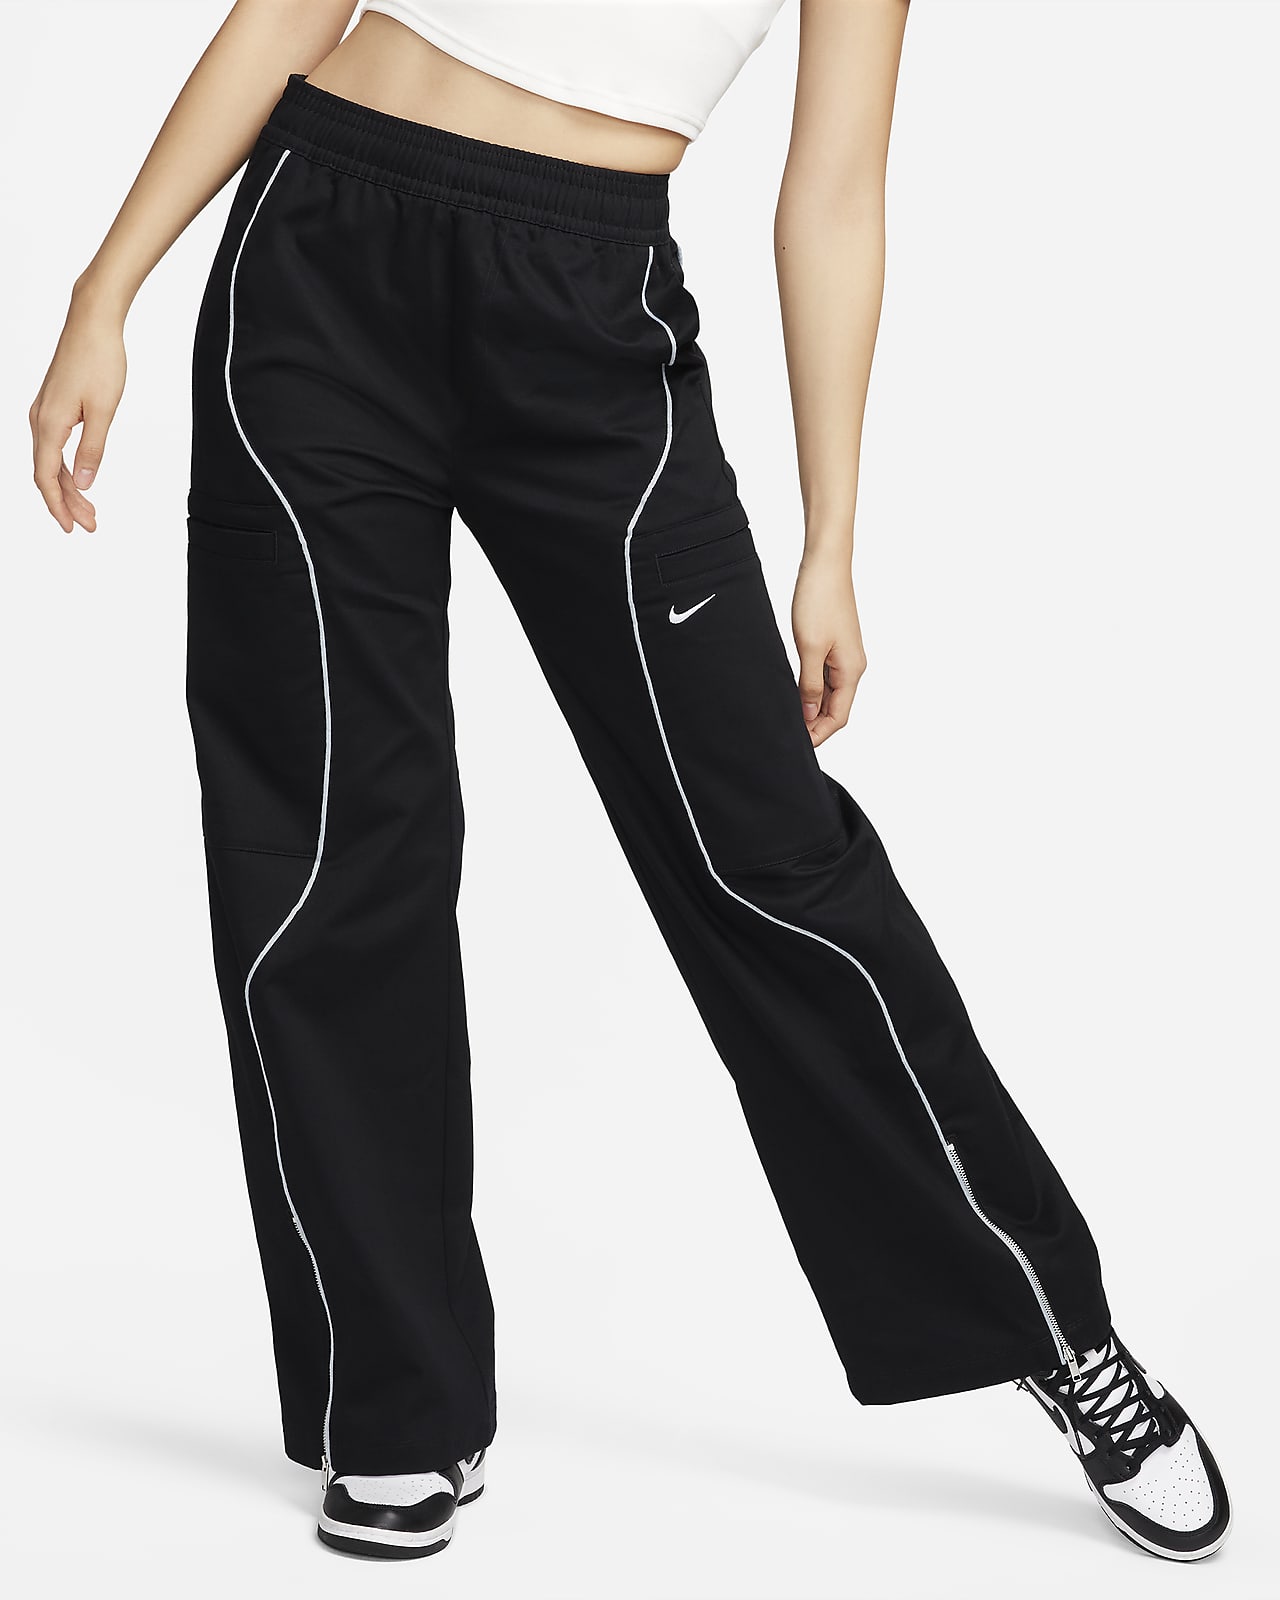 Dámské tkané kalhoty Nike Sportswear s vysokým pasem